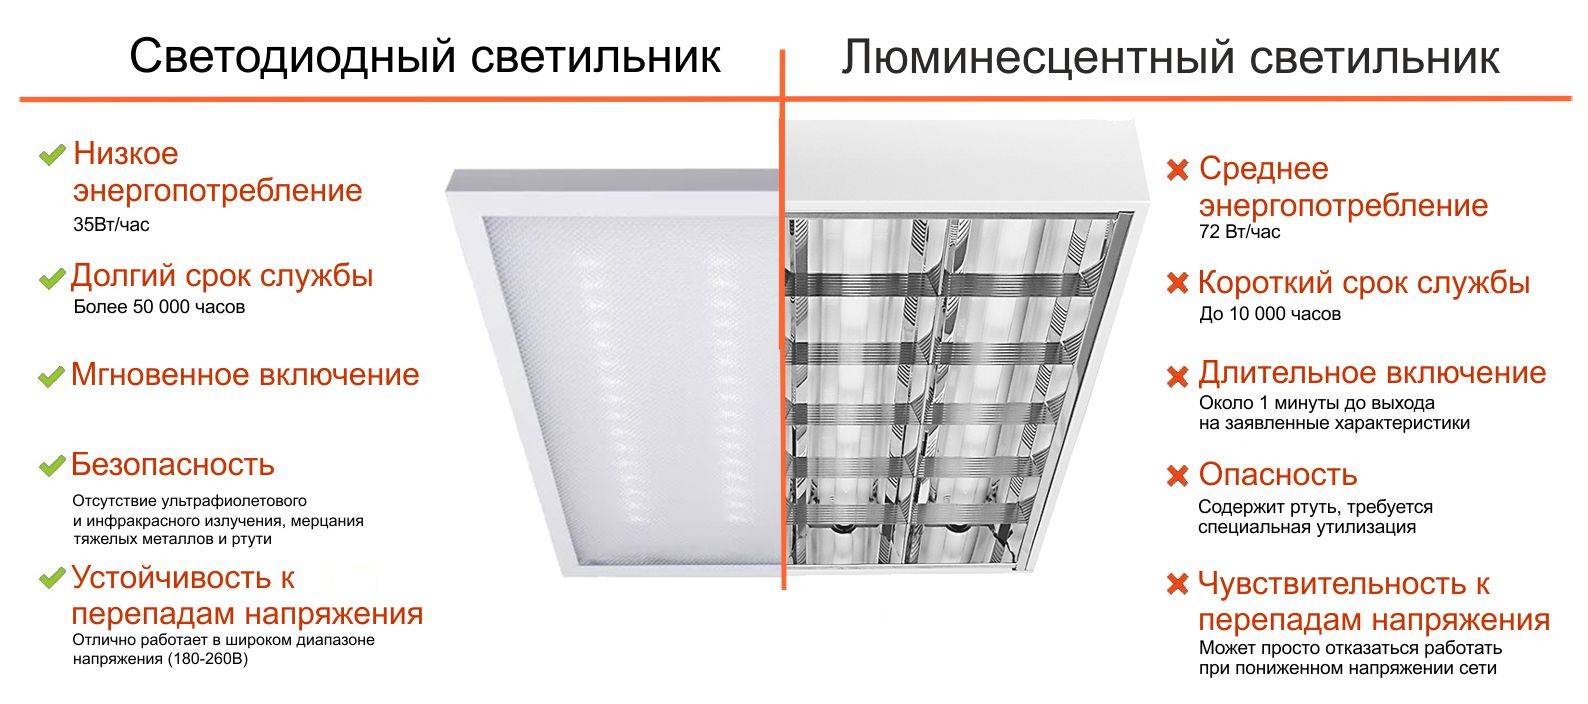 Какие лампы лучше светодиодные или энергосберегающие? сравнение и оценка параметров